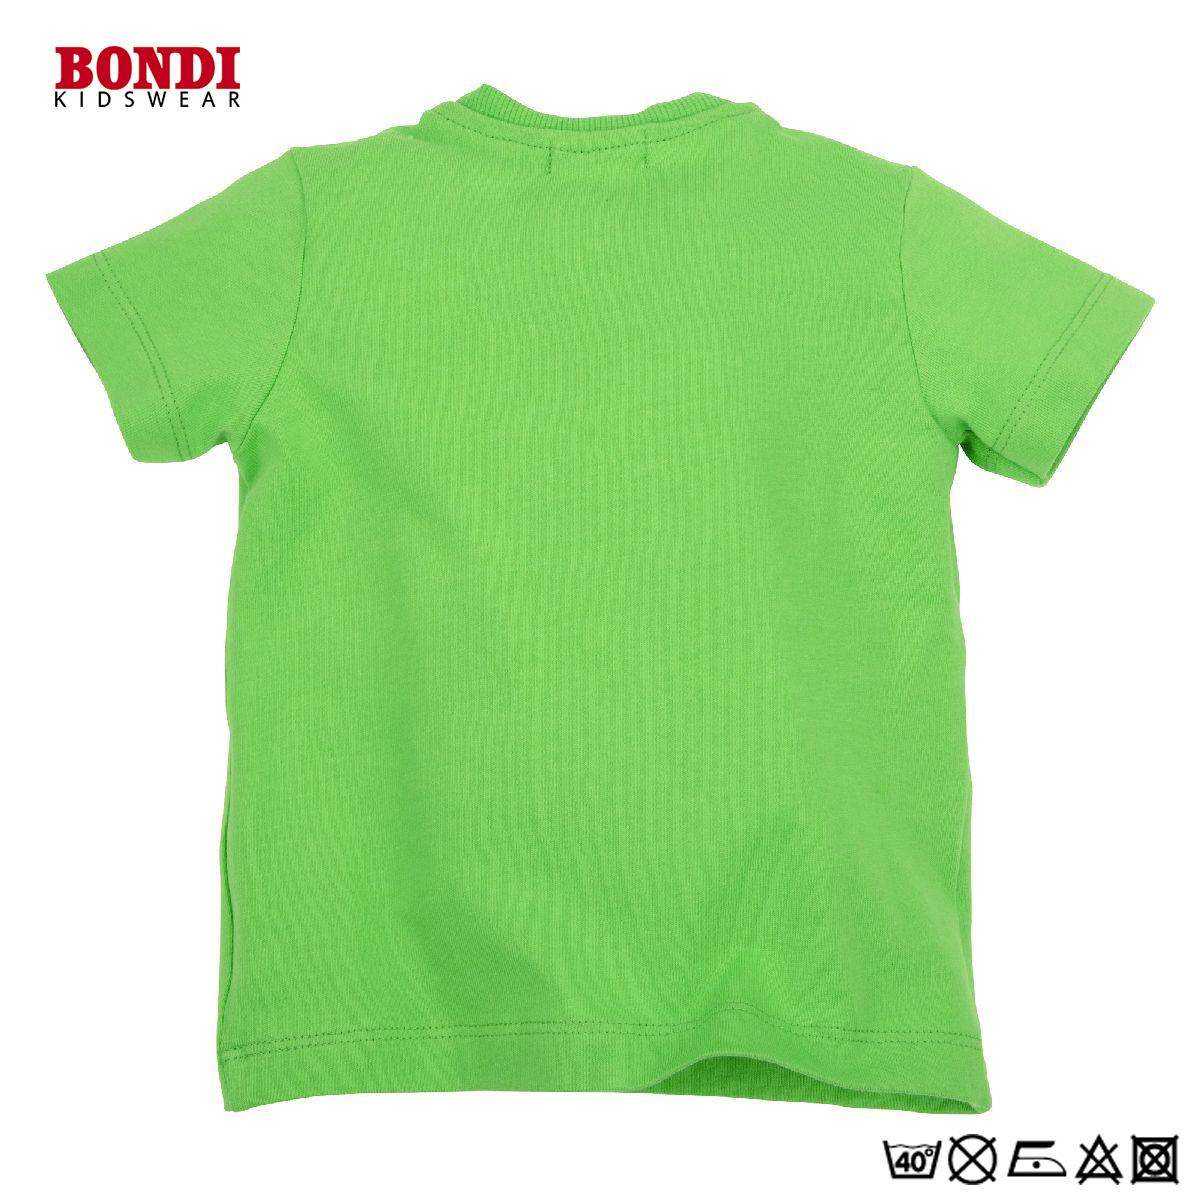 Baby T-Shirt ´Beep Beep´ grün halbärmlig 68